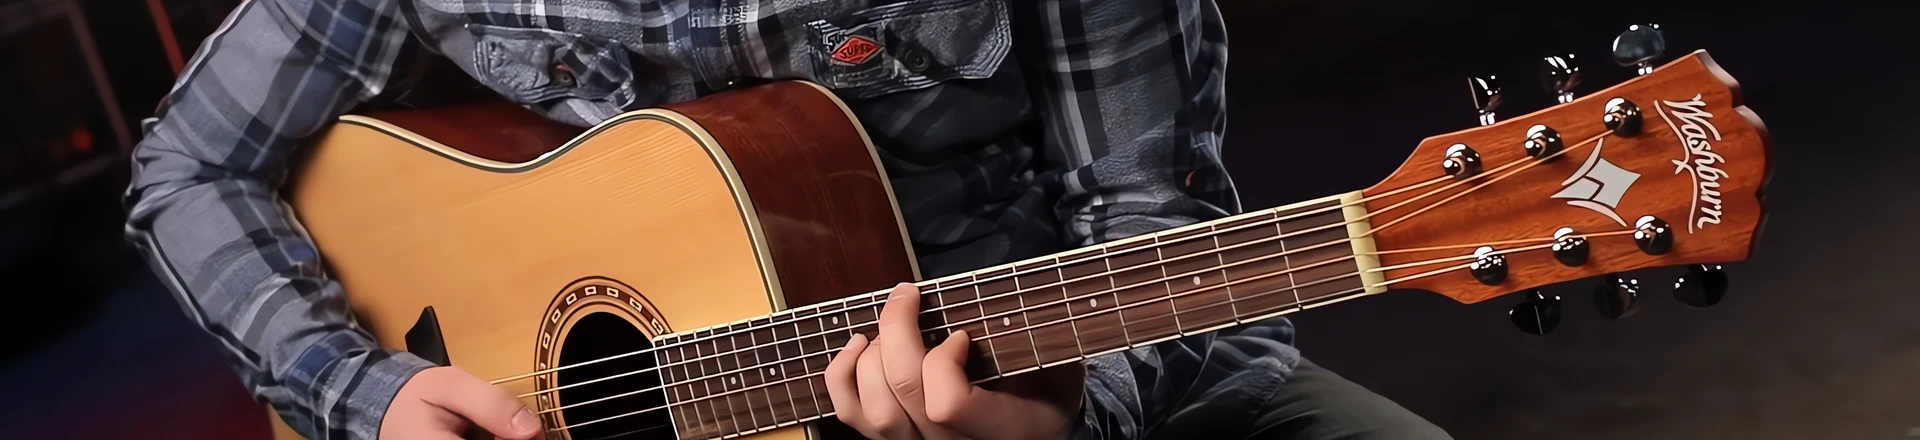 Washburn przedstawia najtańszą serię gitar z litym topem